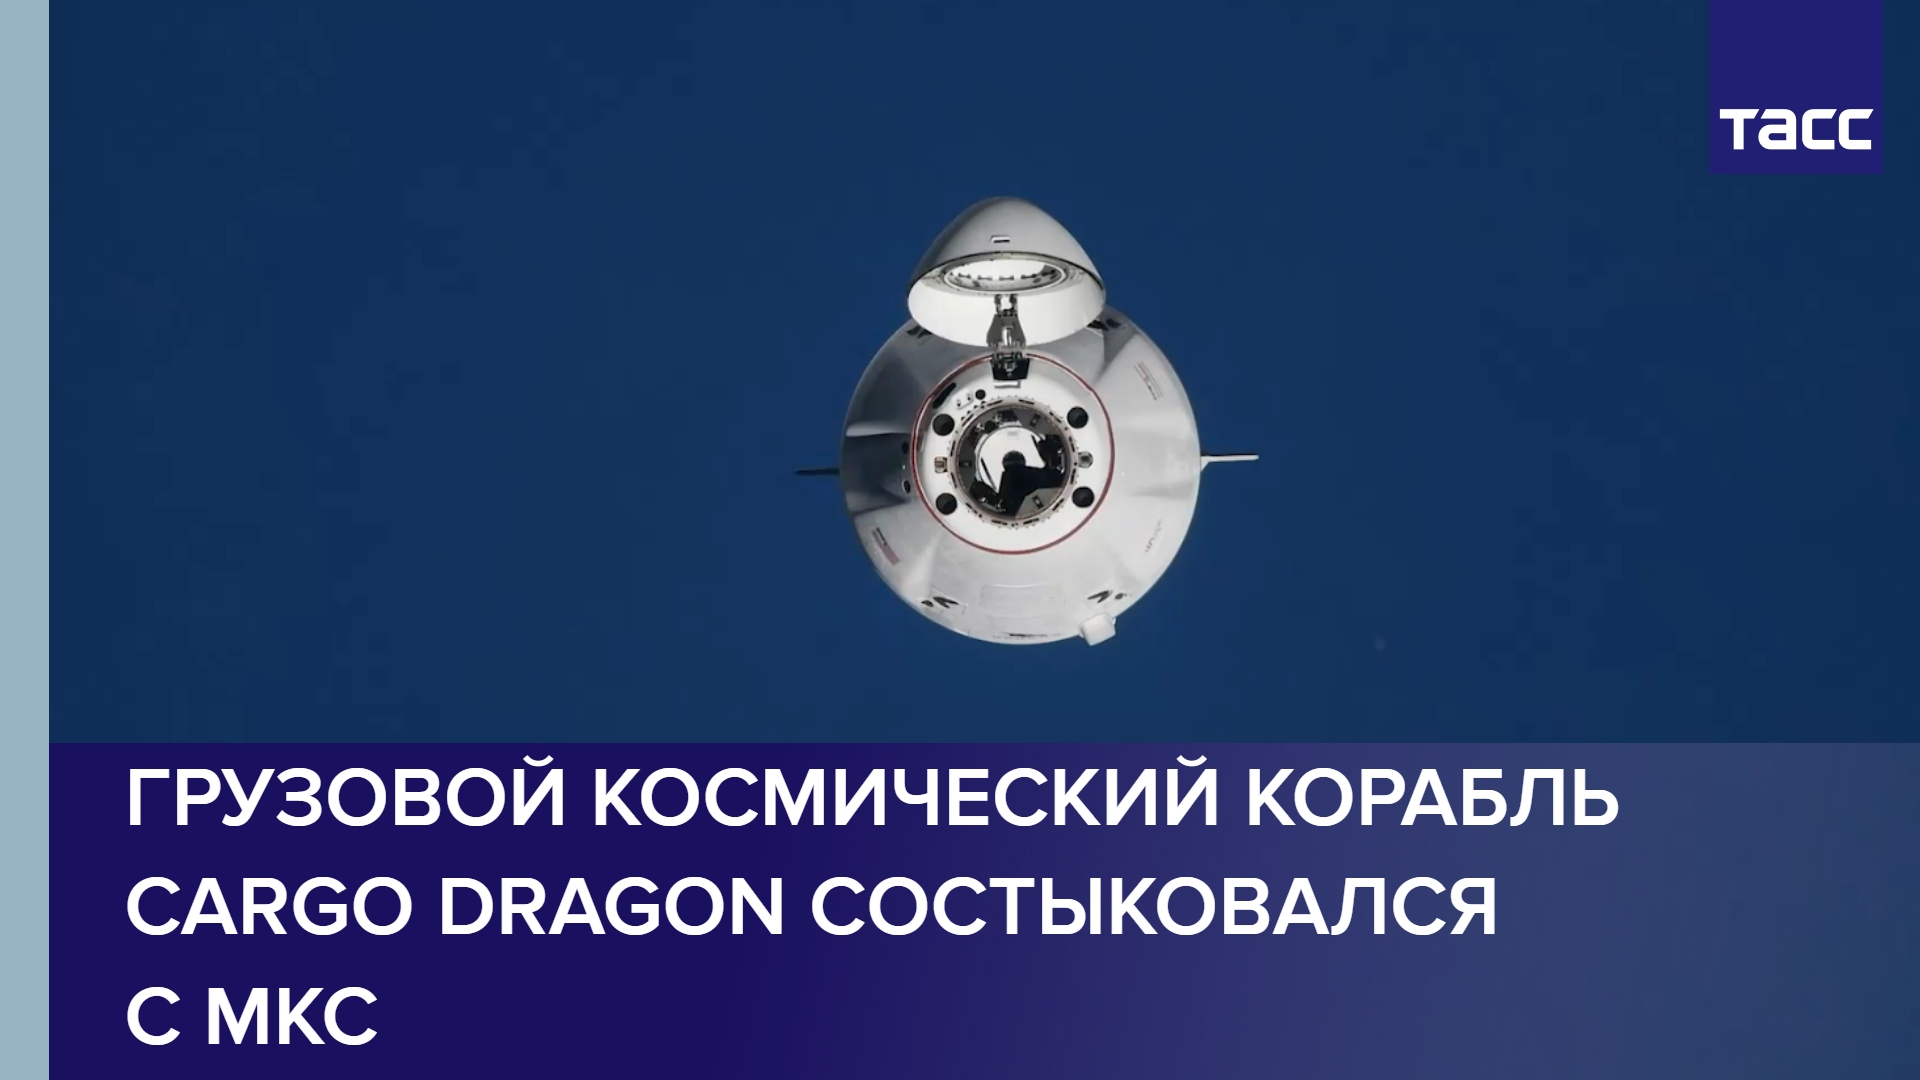 Грузовой космический корабль Cargo Dragon состыковался с МКС